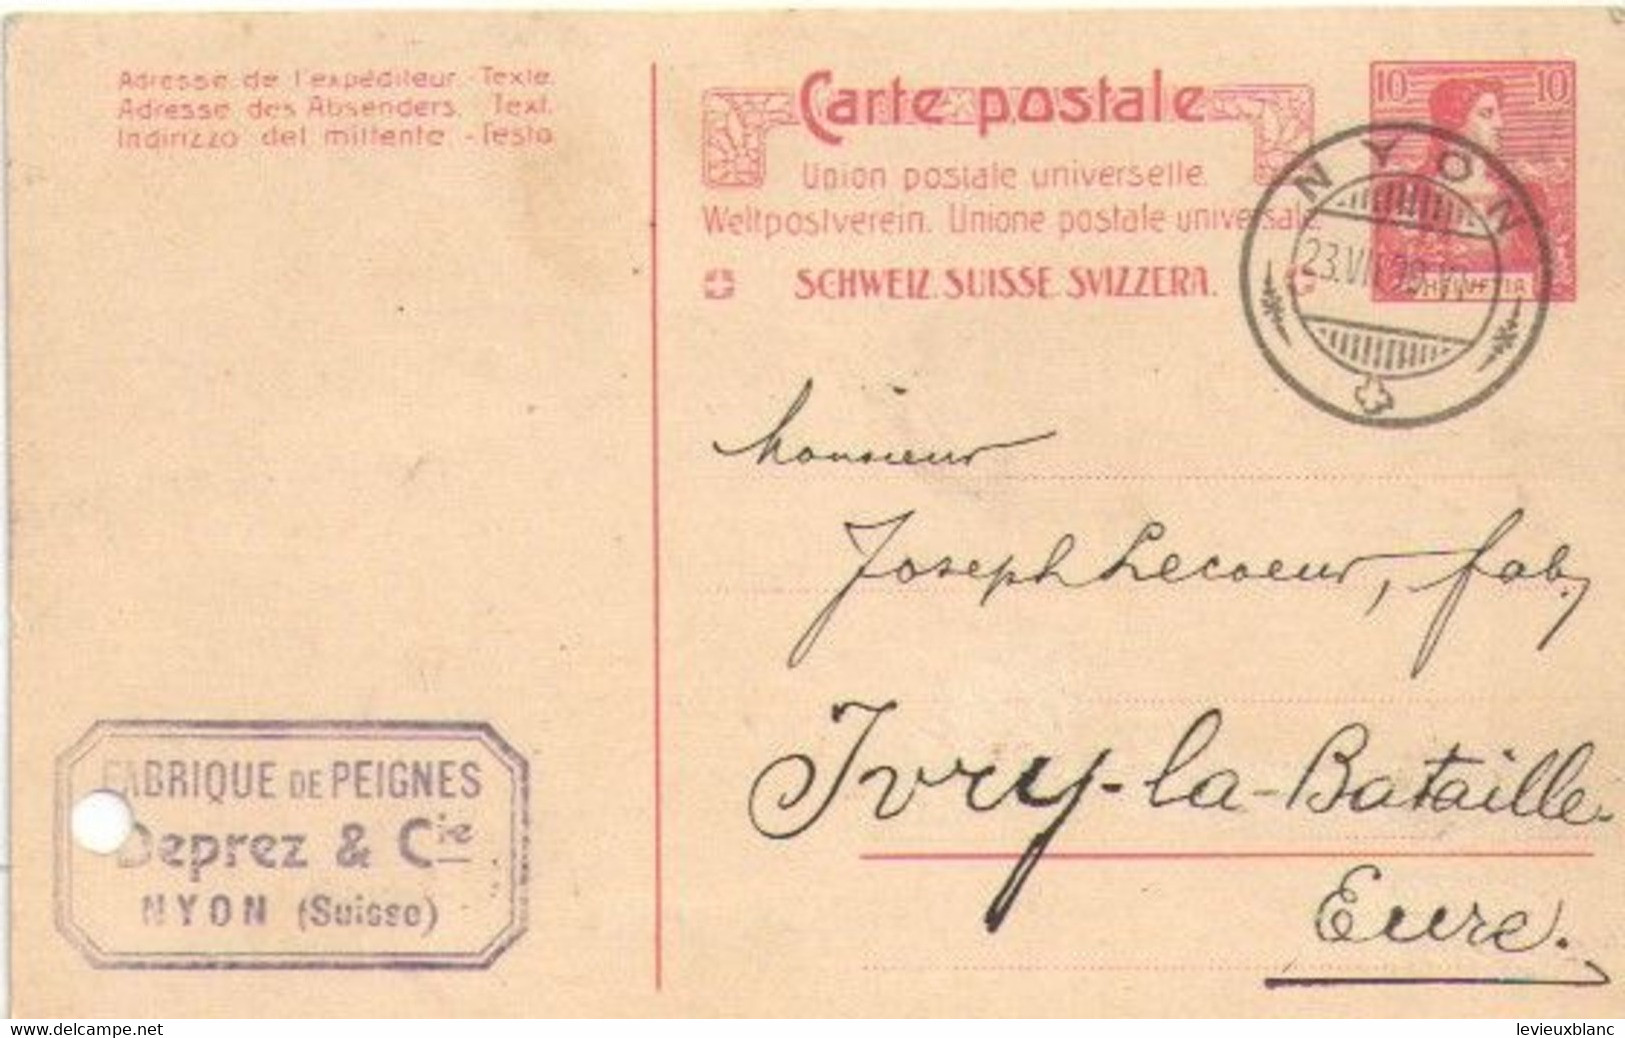 Fabrication De Peignes En Ivoire/Joseph LECOEUR/Ivry La Bataille/Commande/DEPREZ & Cie / NYON /SUISSE/1909     FACT495 - Suiza